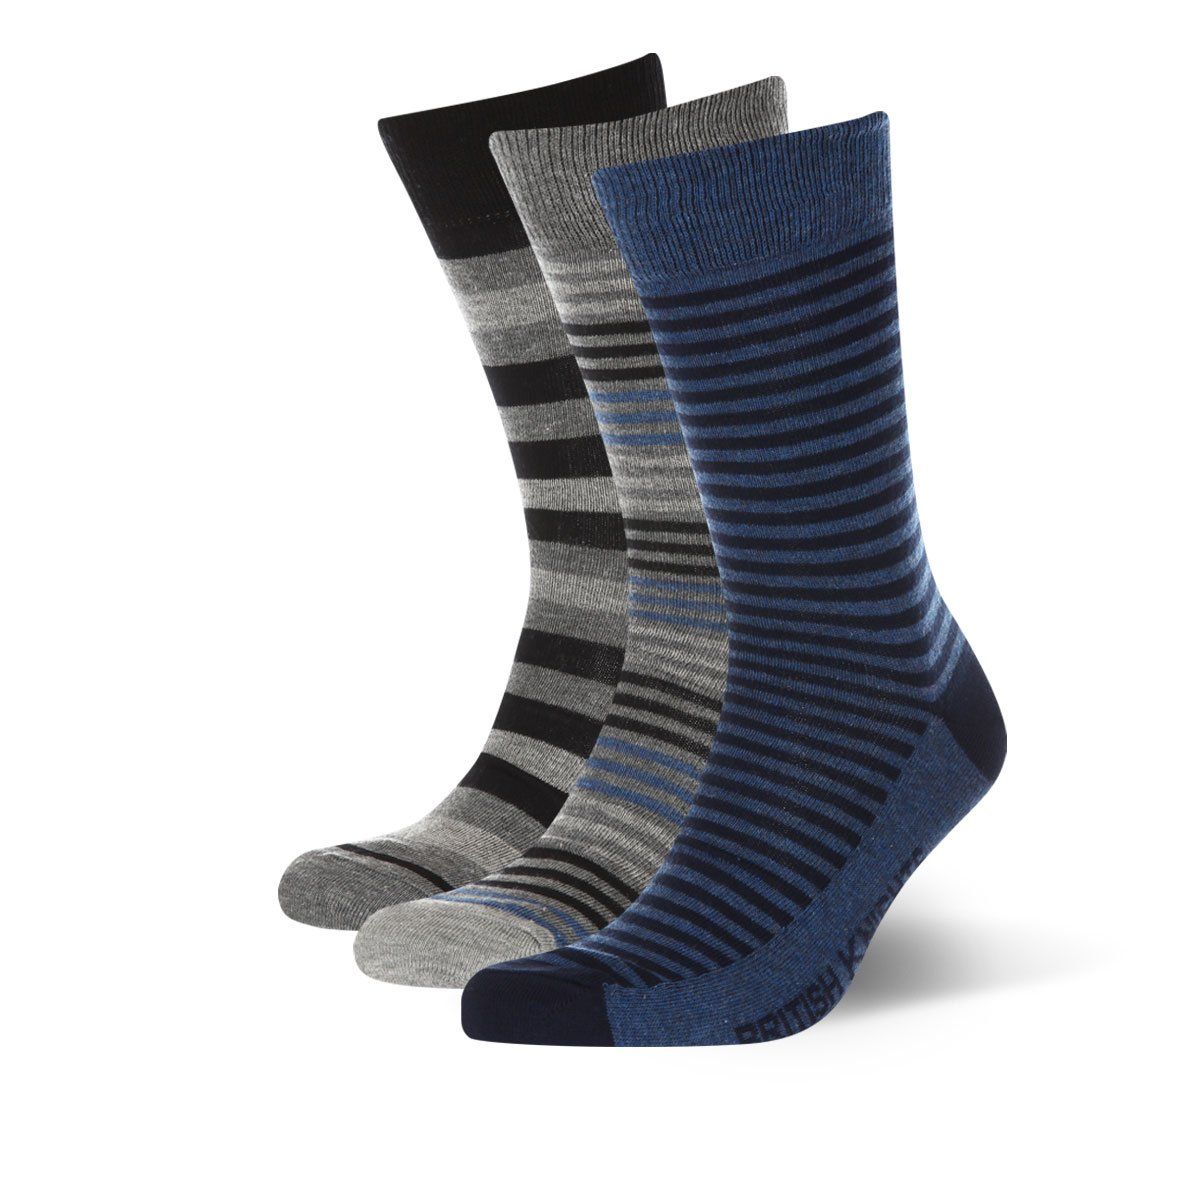 Носки BK casual men design socks. В наборе 3 пары разной расцветки.